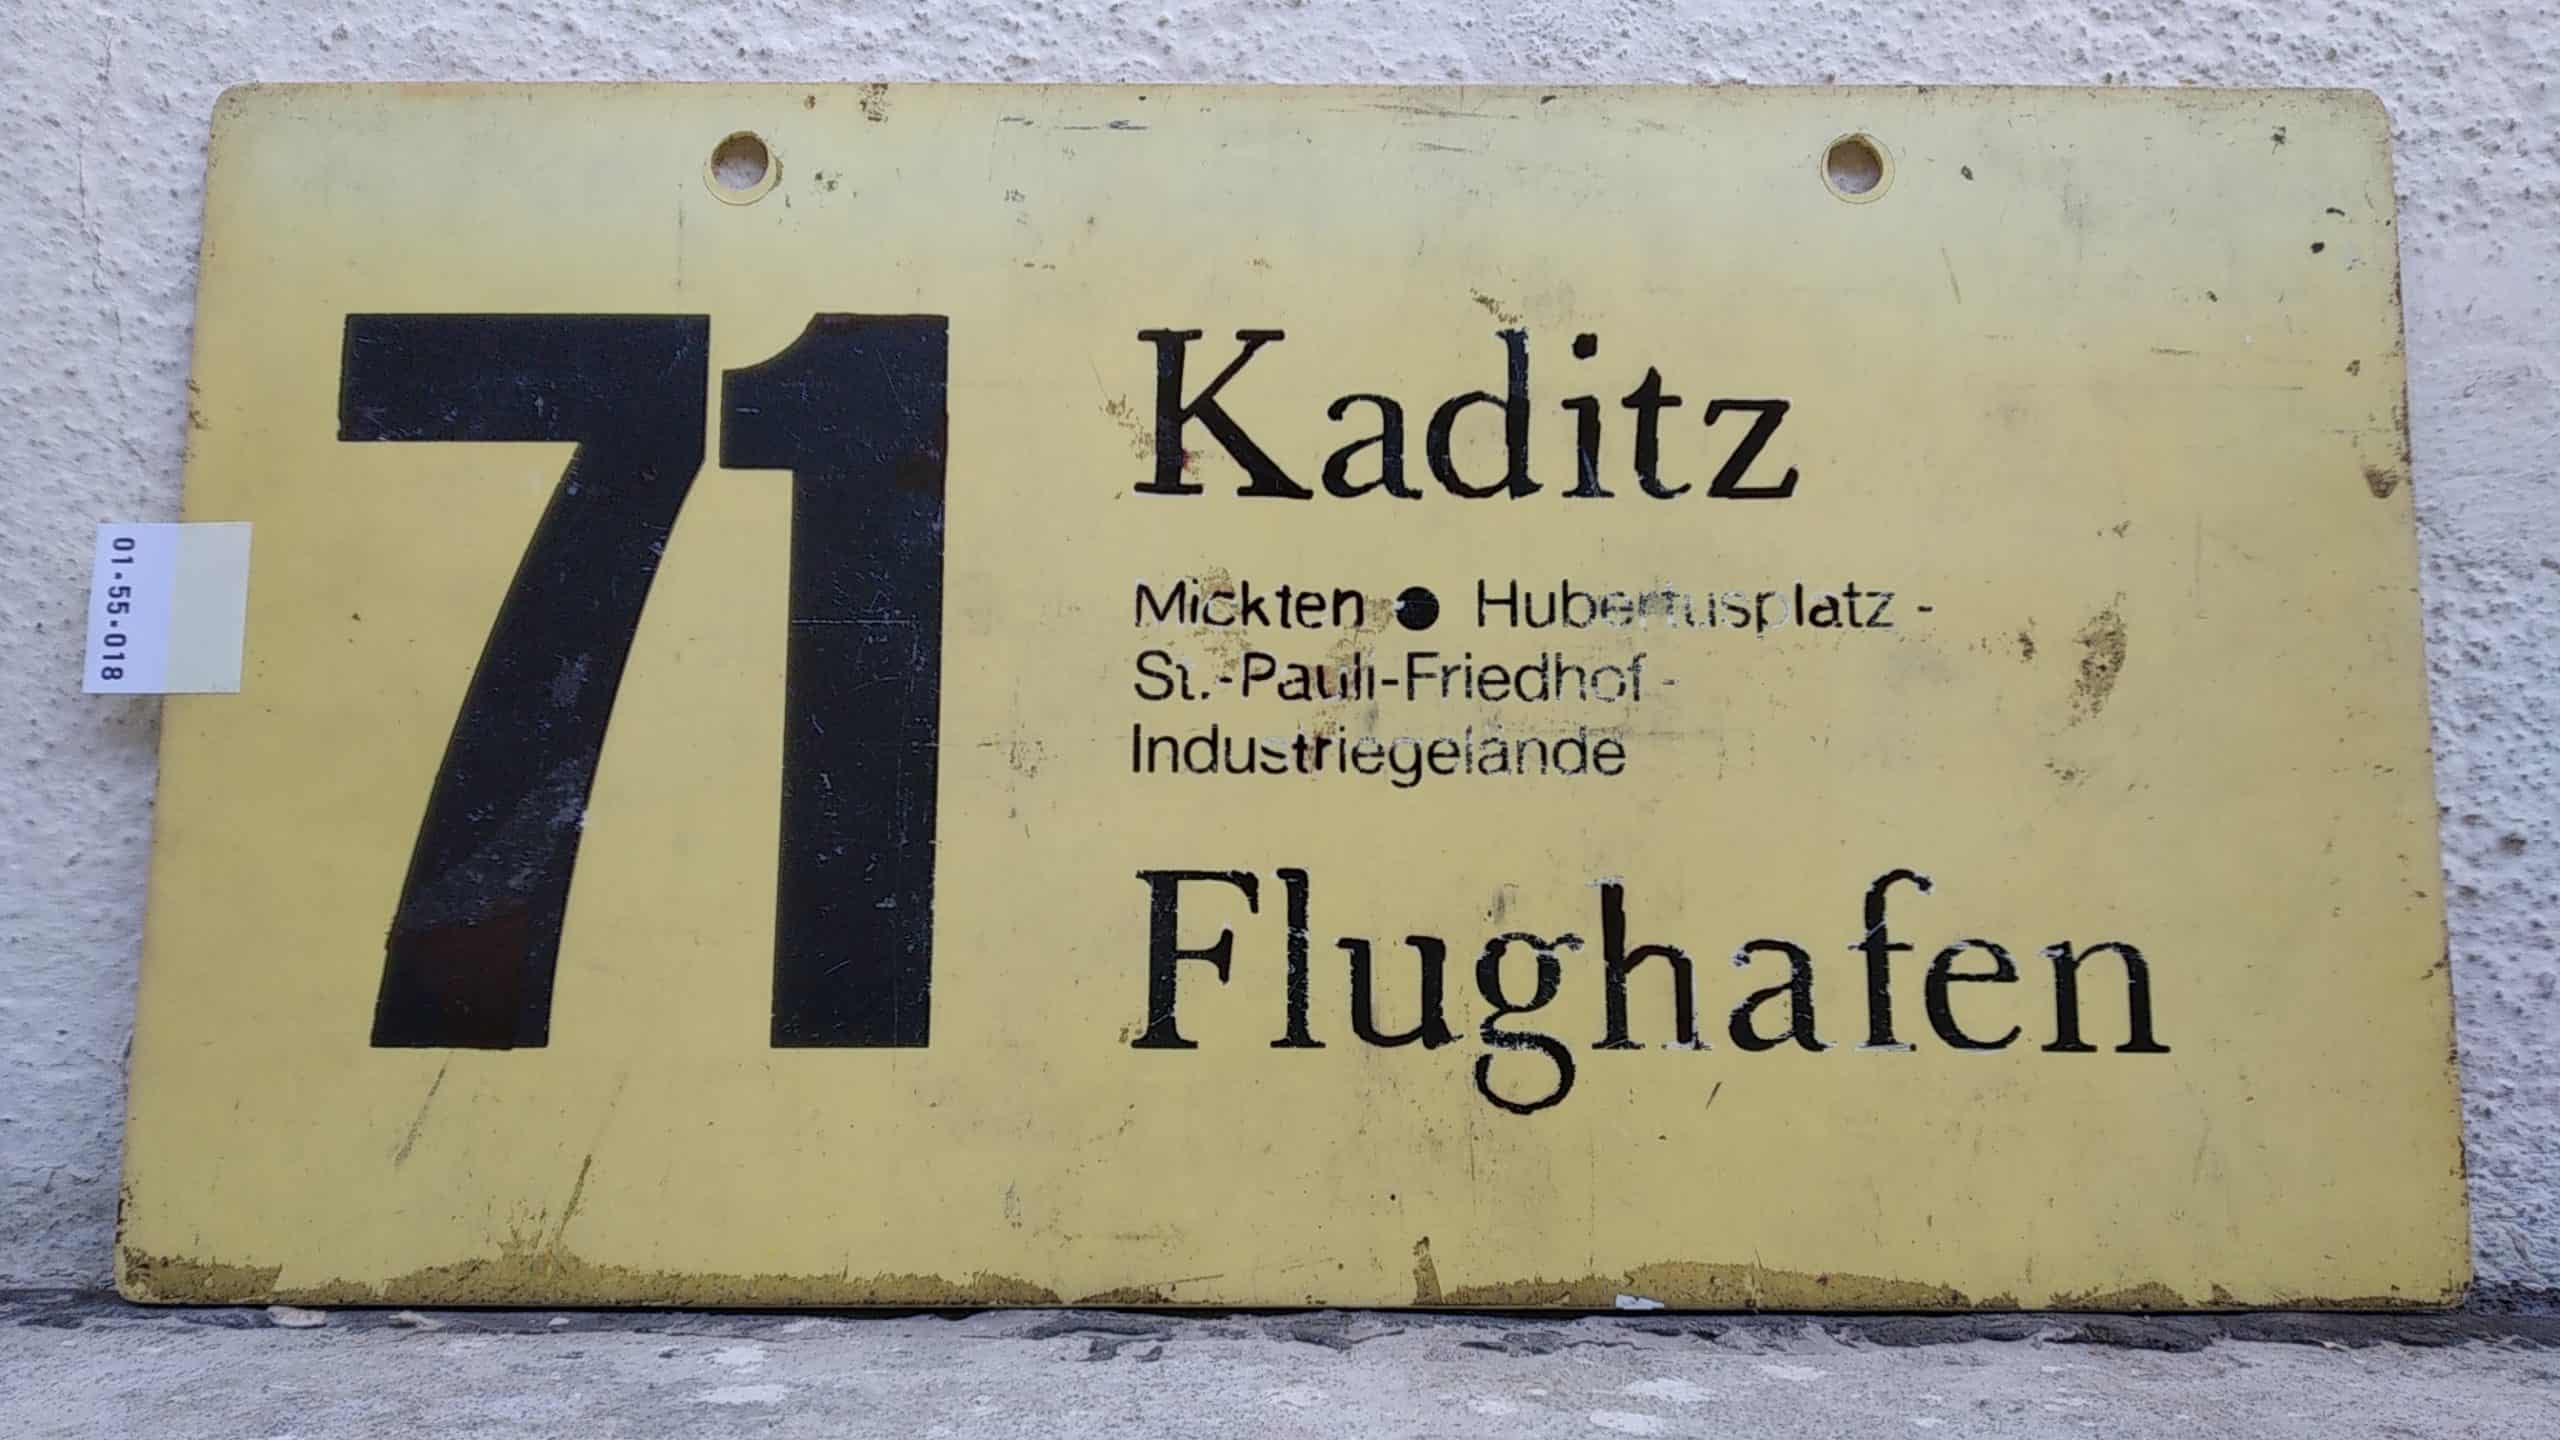 Ein seltenes Bus-Linienschild aus Dresden der Linie 71 von Kaditz nach Flughafen #1